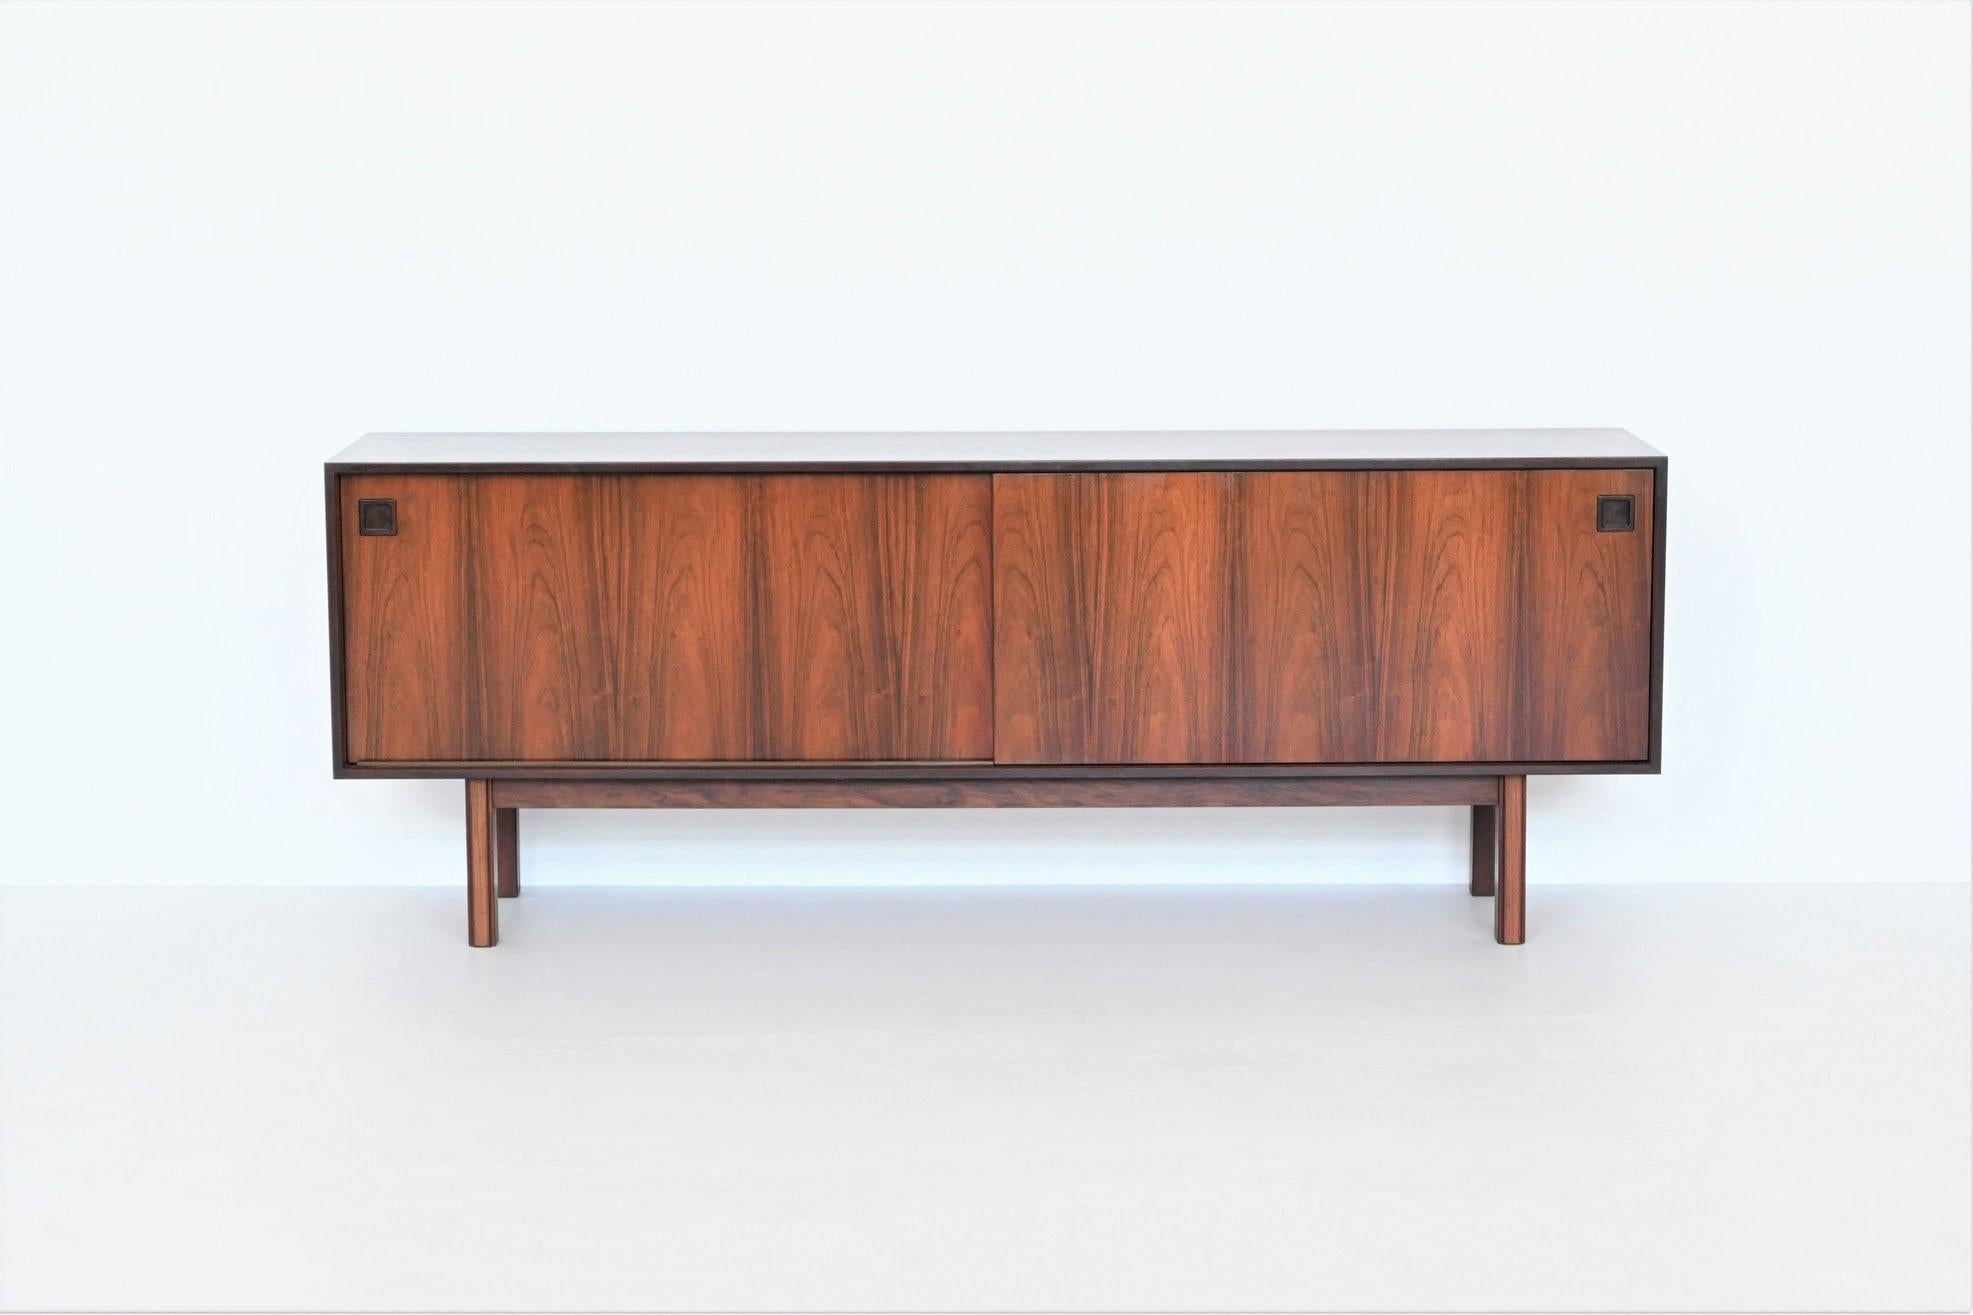 Schönes und zeitloses Sideboard Modell 21, entworfen von Gunni Omann für Omann Junior, Dänemark 1960. Dieses gut verarbeitete Sideboard ist aus furniertem Palisanderholz gefertigt und wird von einem massiven Hartholzrahmen getragen. Das Holz hat